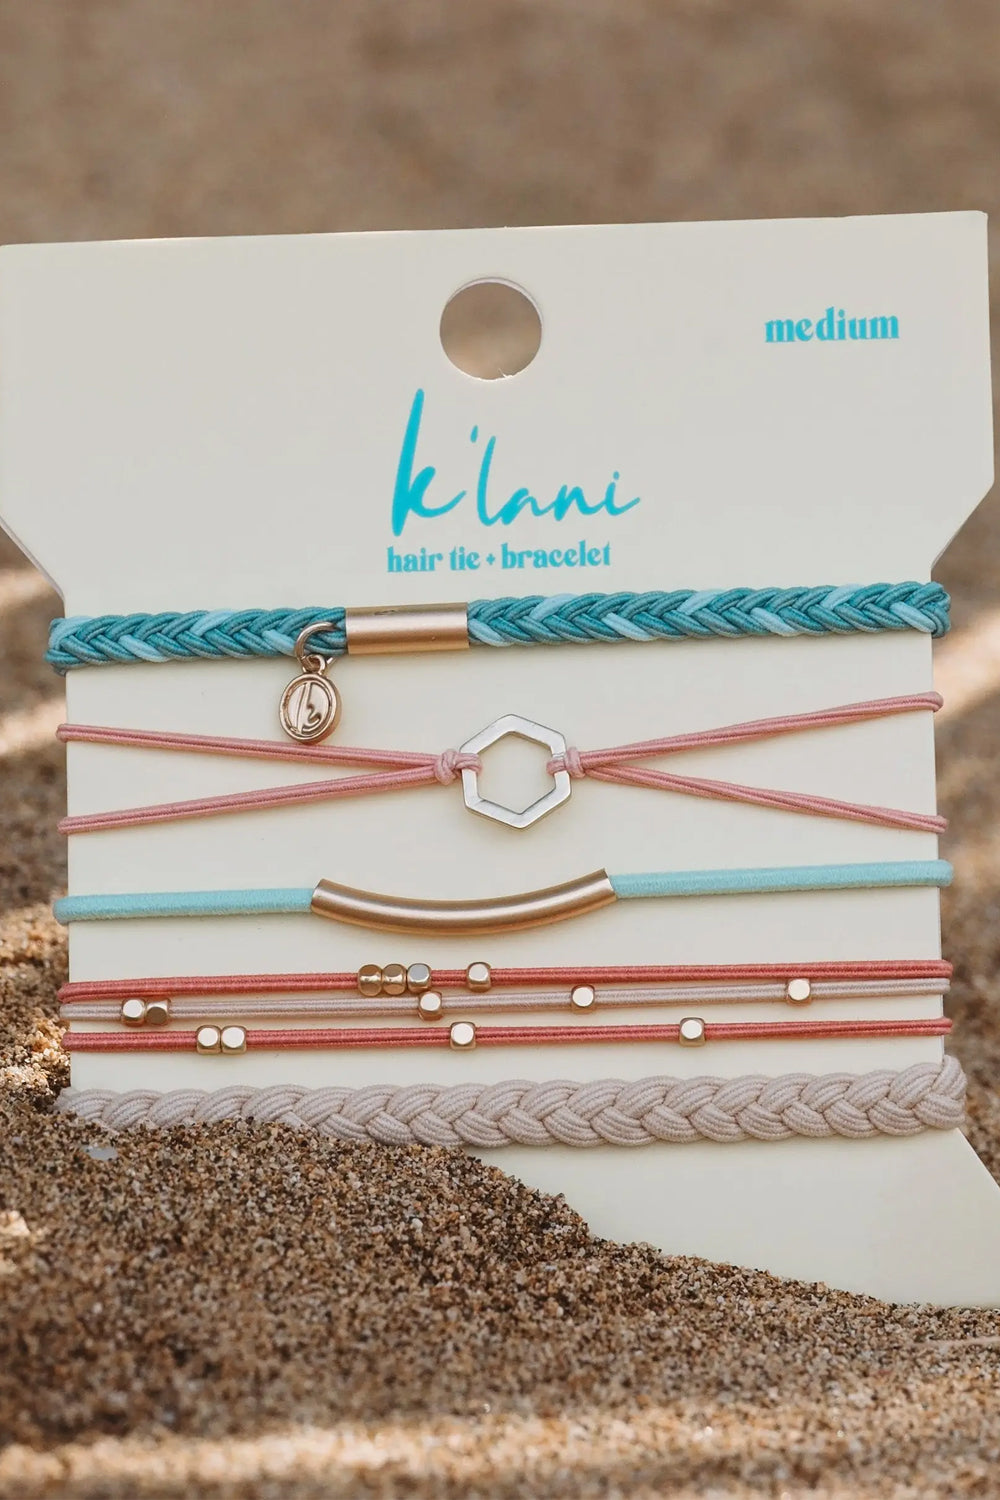 K'Lani: Live Hair Tie Bracelets | Makk Fashions